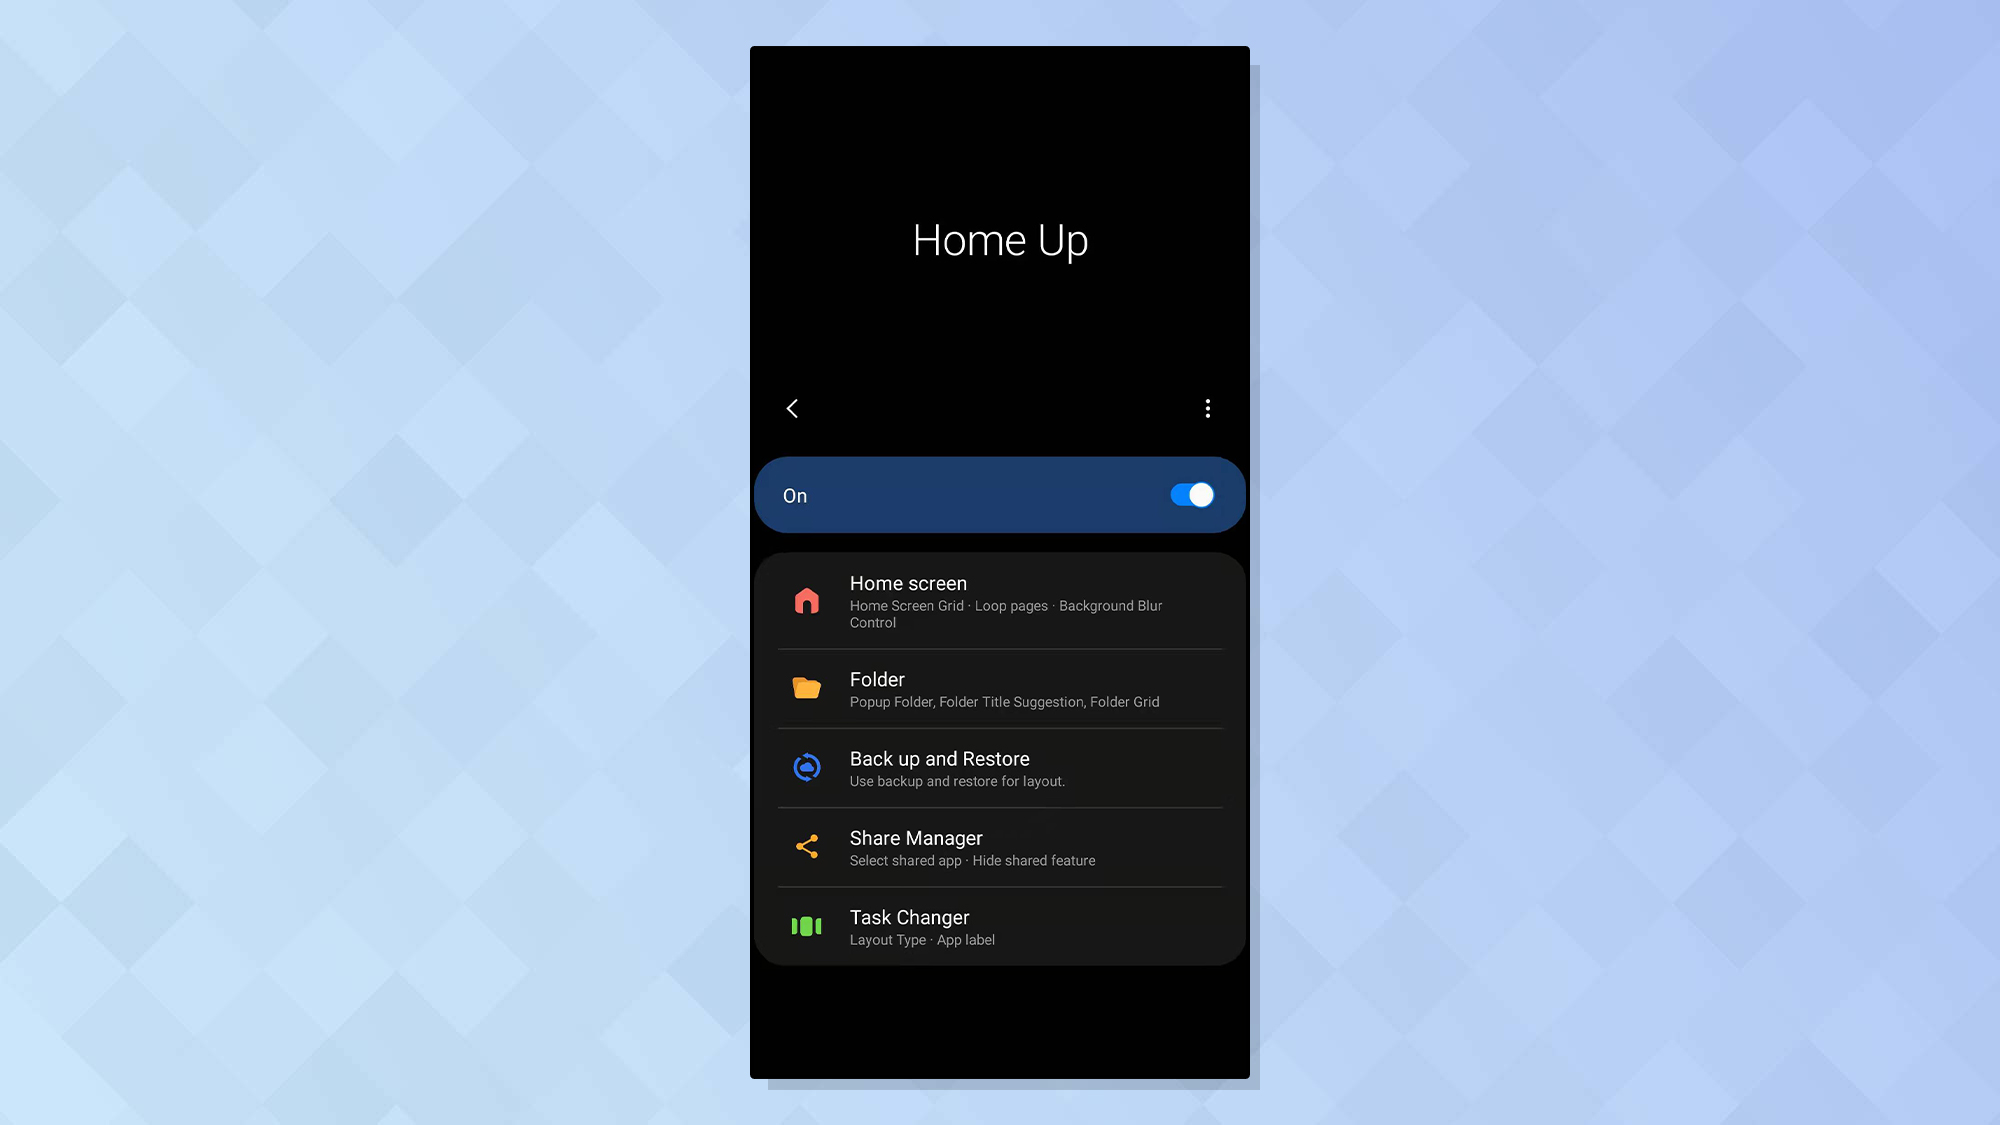 Capture d'écran de l'application Good Lock de Samsung montrant le widget Homeup